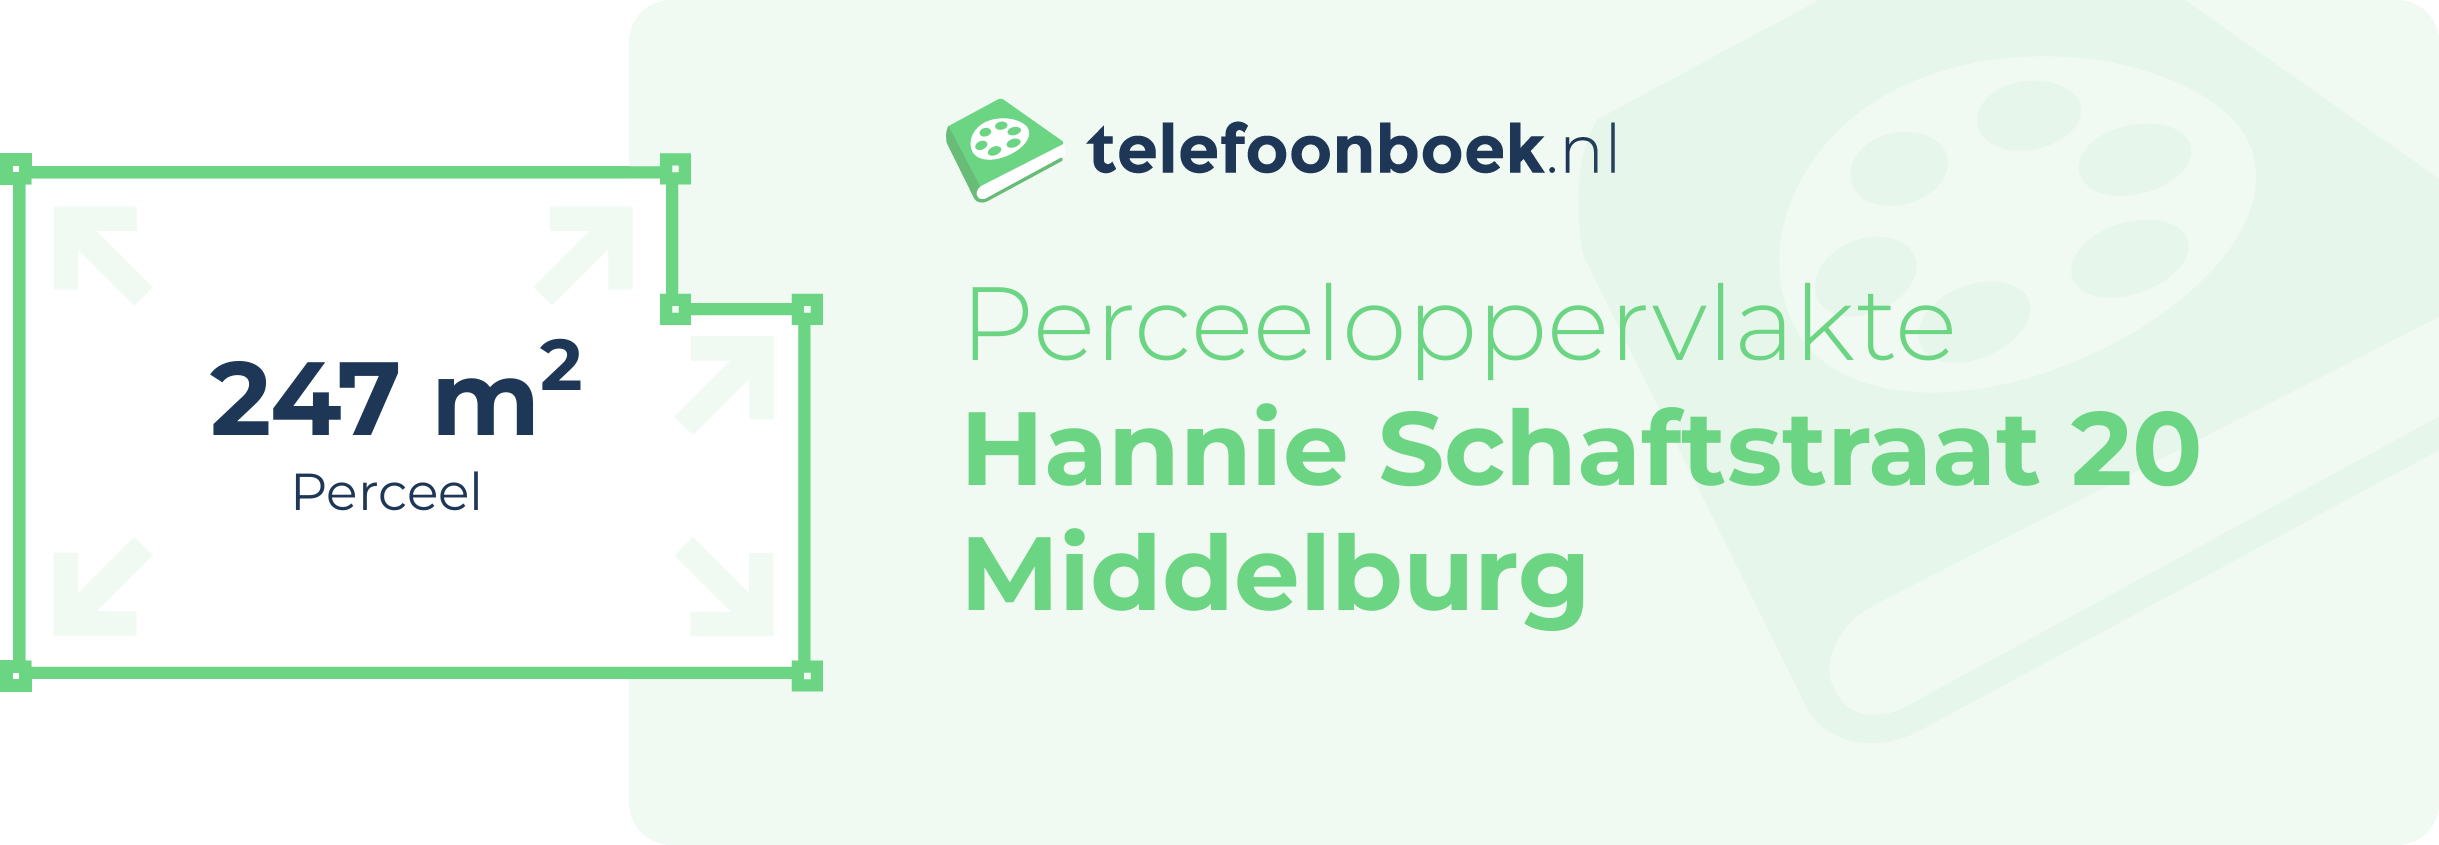 Perceeloppervlakte Hannie Schaftstraat 20 Middelburg